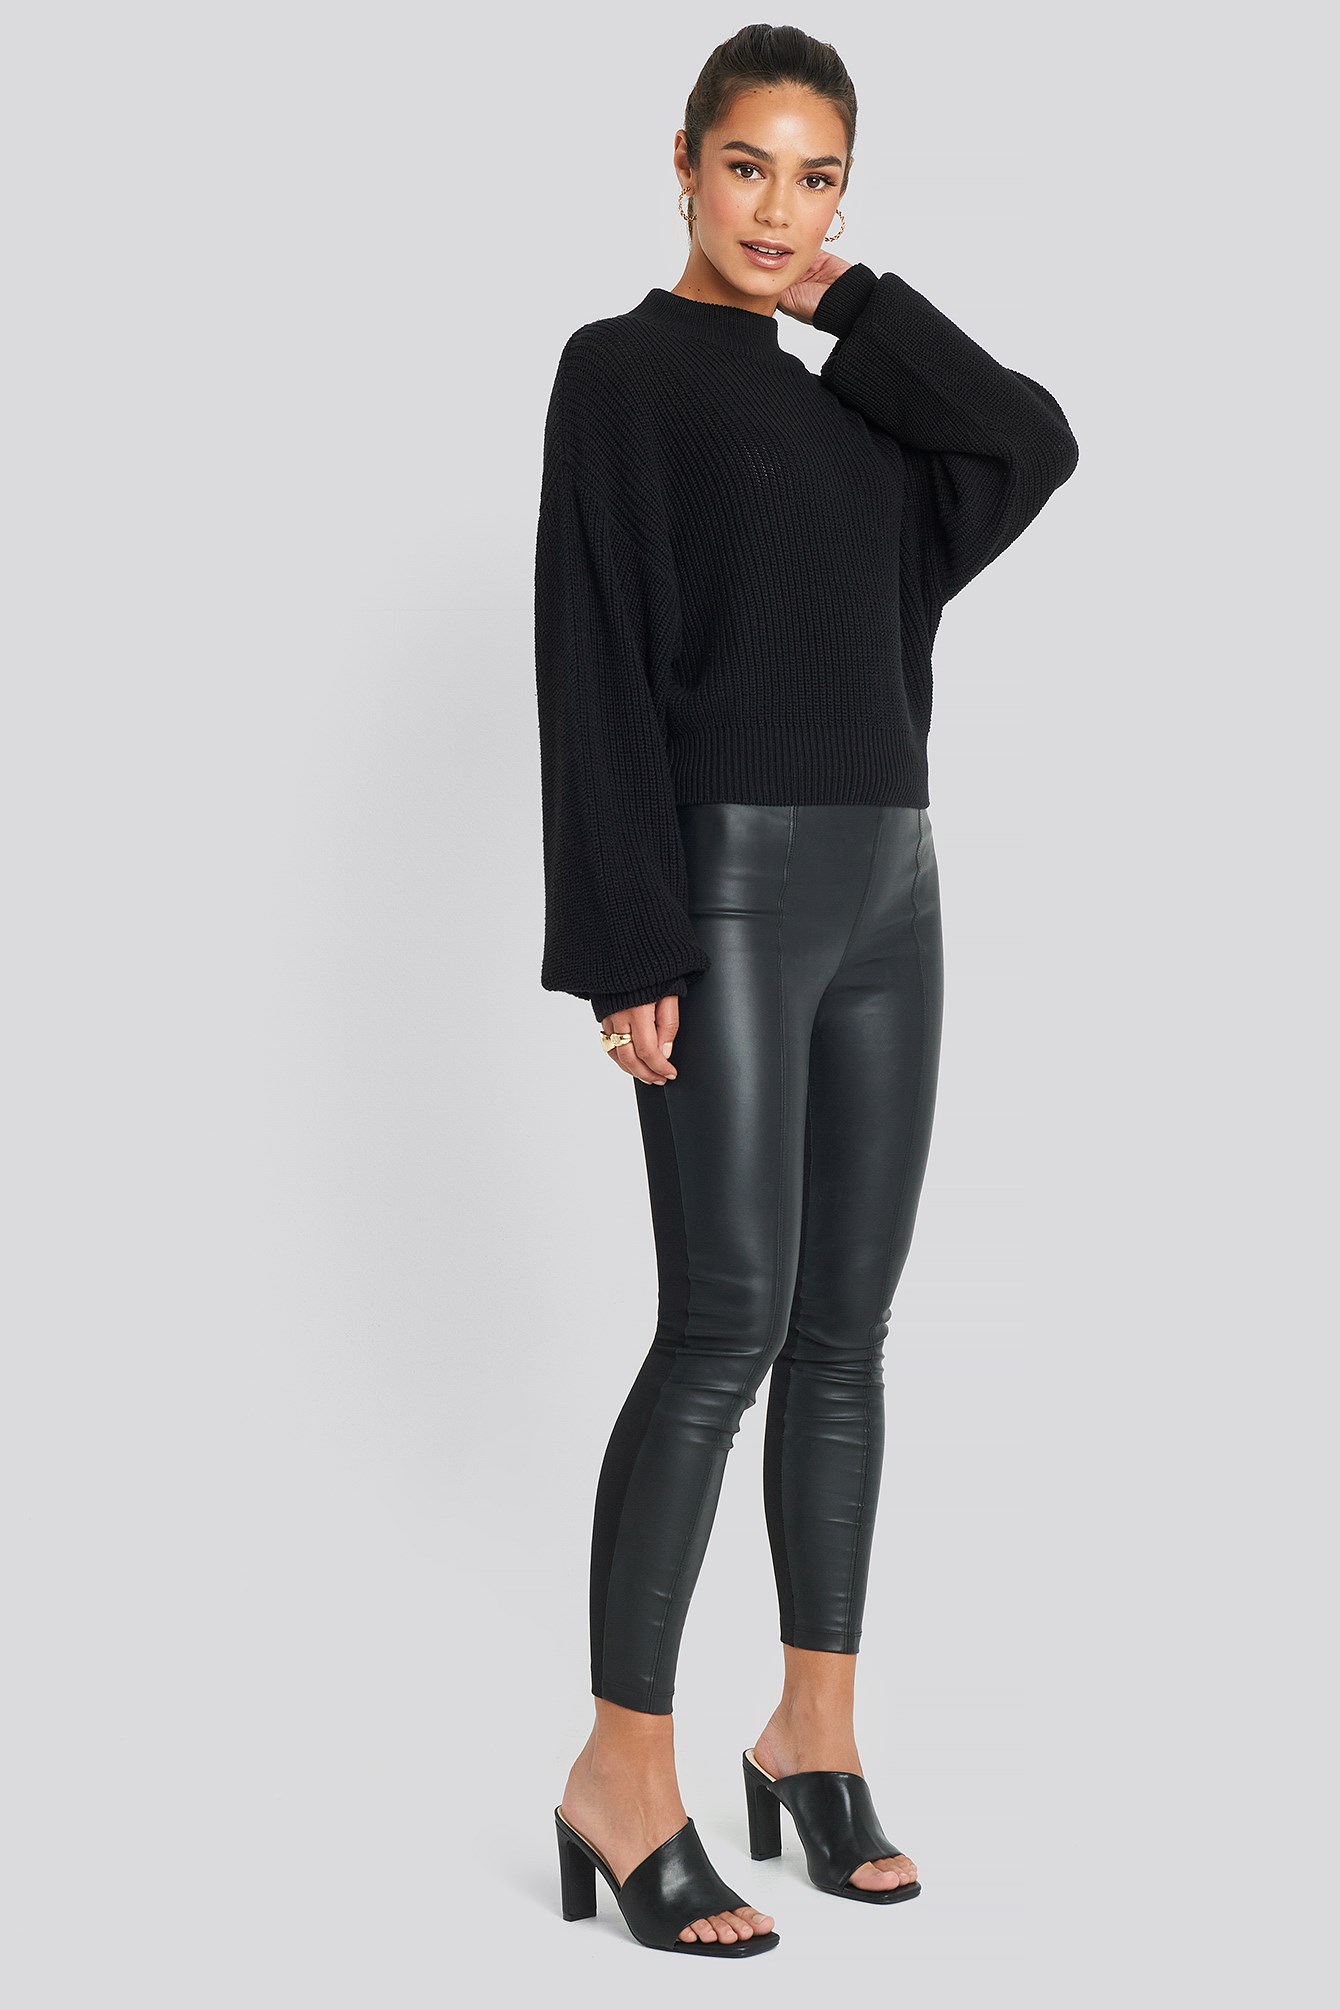 Romi Leggings Black Outfit.